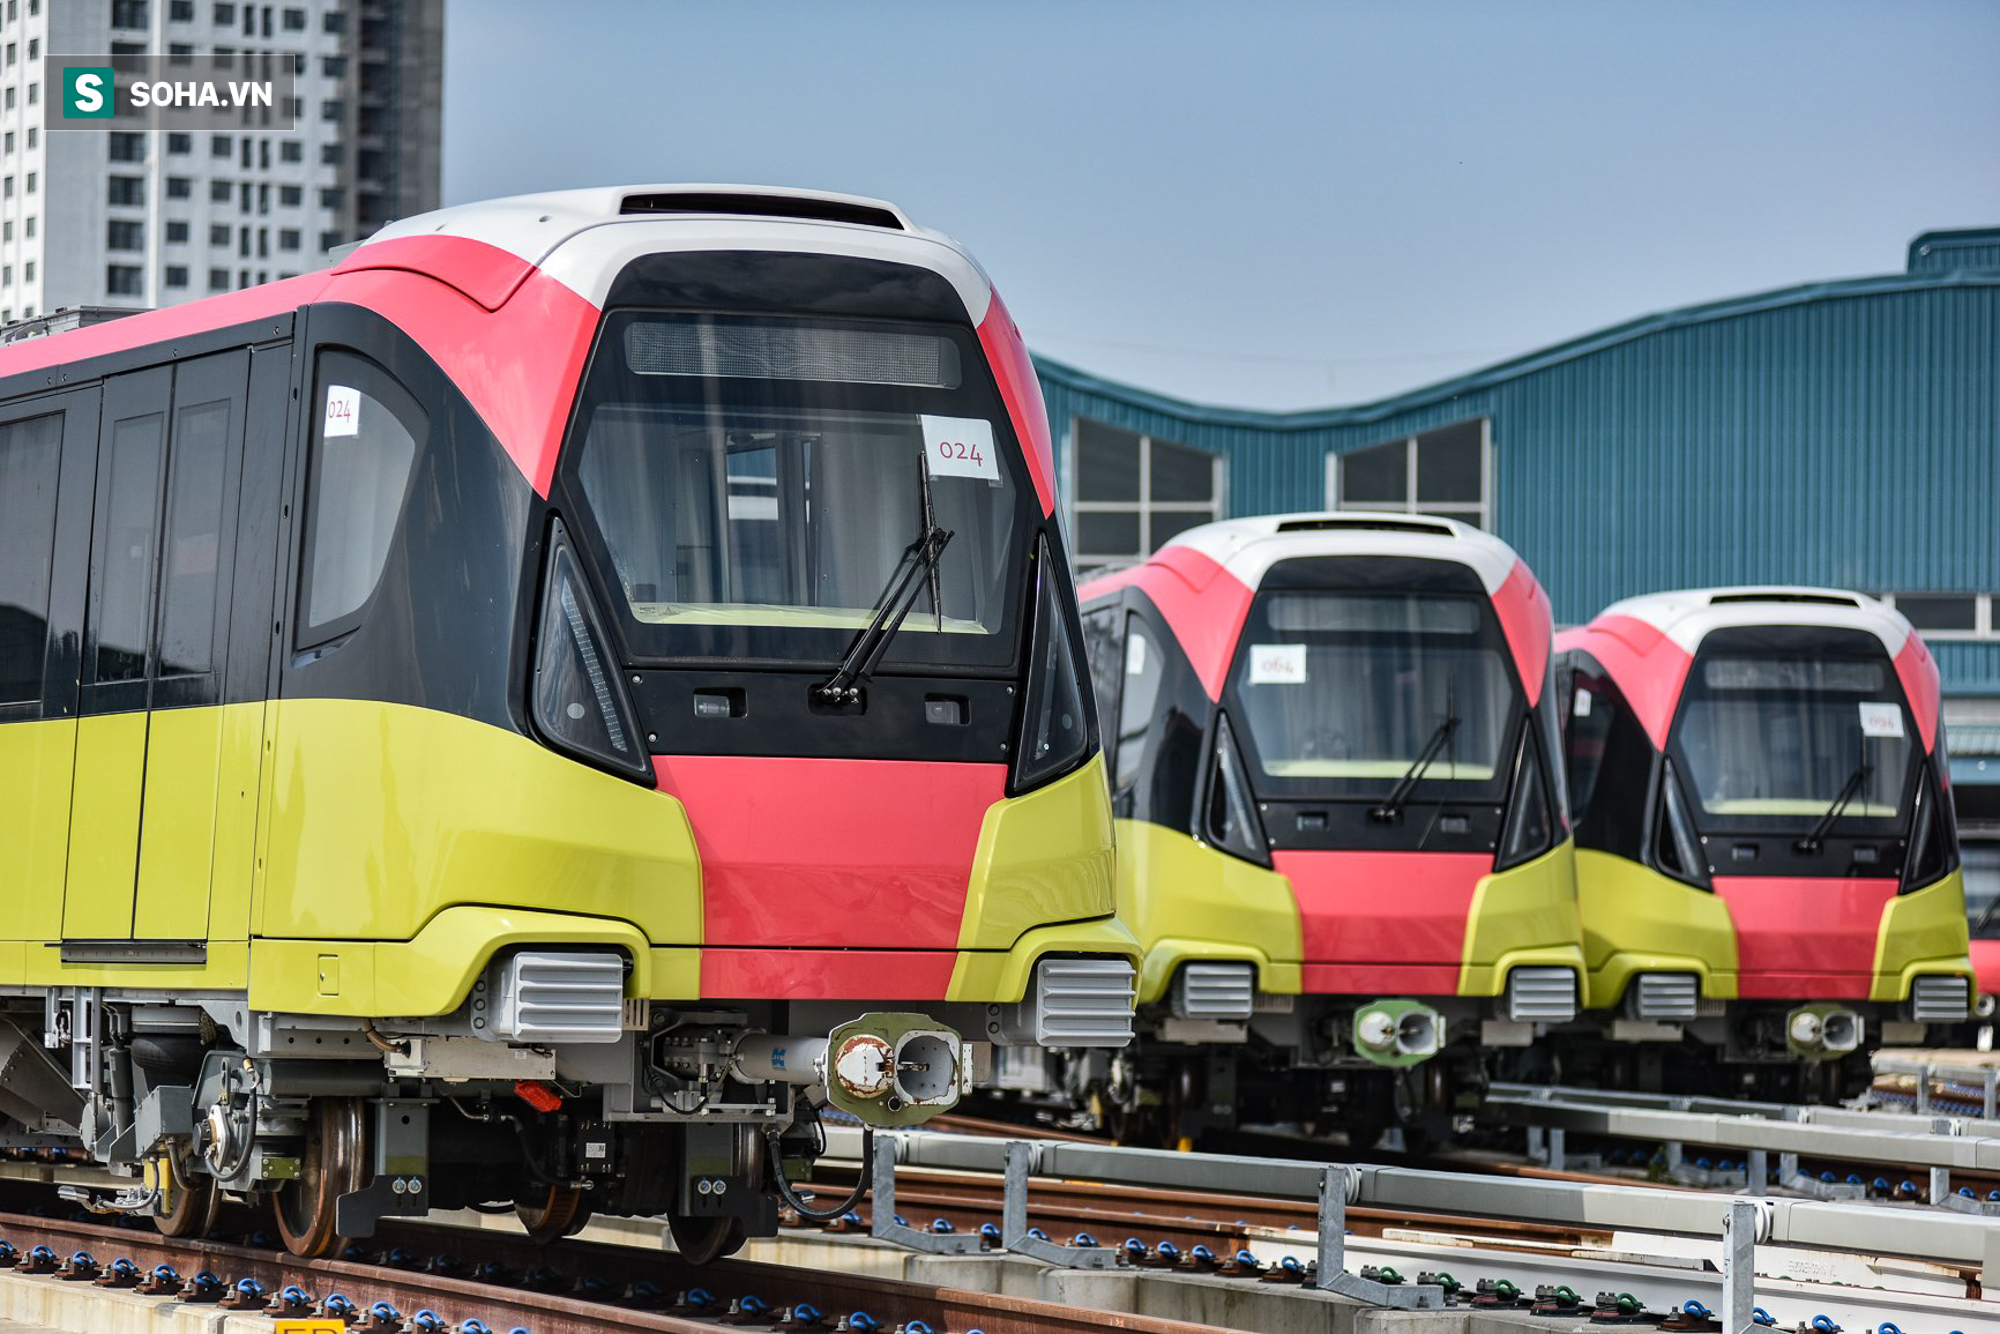 Hình ảnh mới, lạ mắt của tuyến Metro tỷ USD ở Thủ đô sắp chạy thử nghiệm đồng loạt - Ảnh 10.